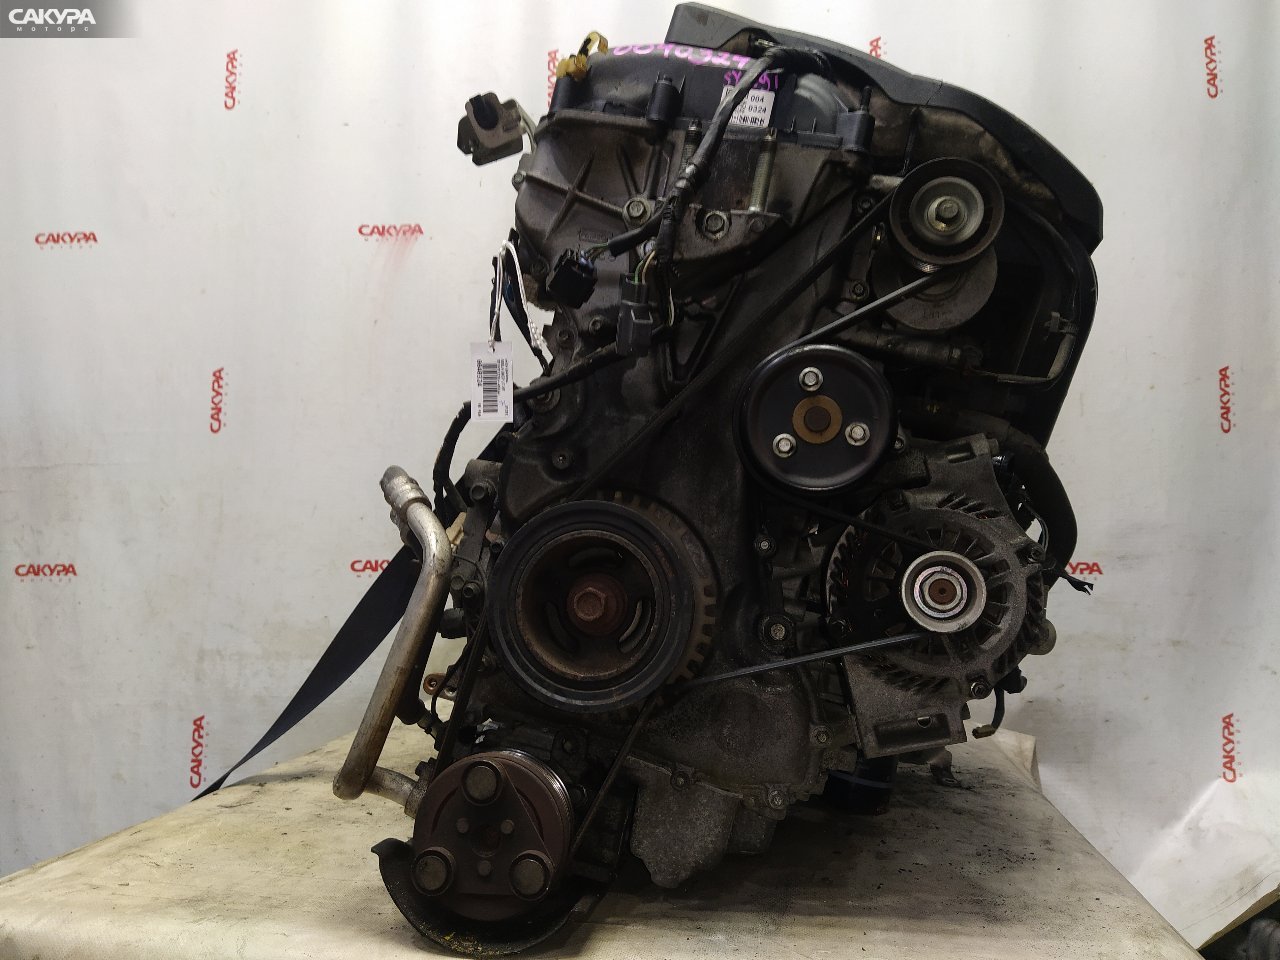 Двигатель Mazda Axela BKEP LF-VE: купить в Сакура Красноярск.